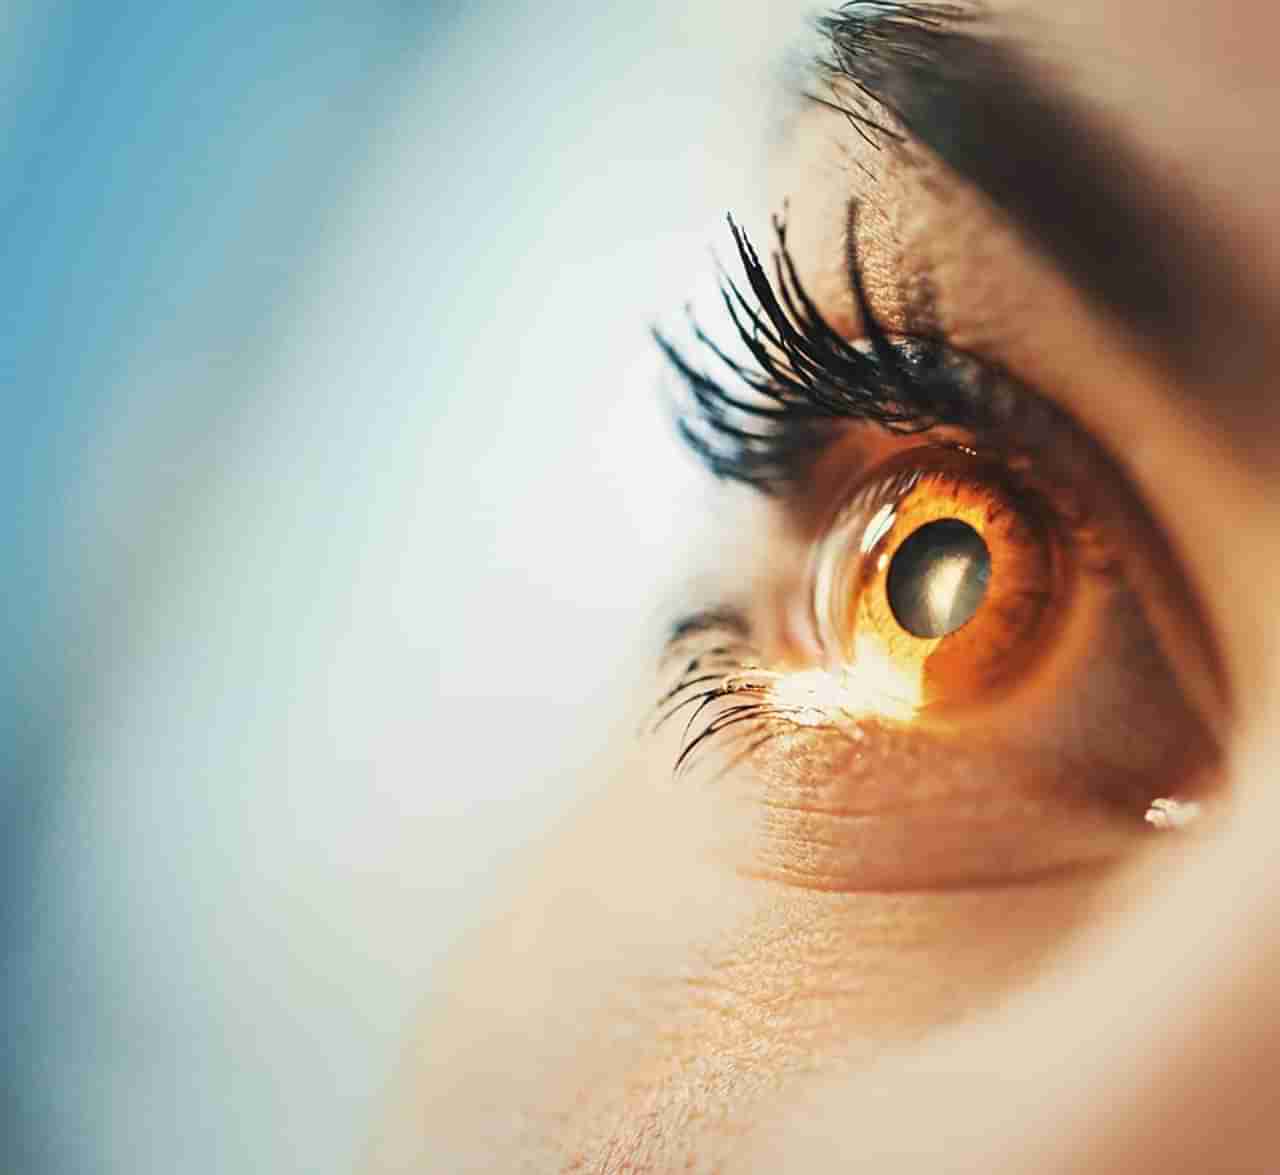 Astrology | डोळ्यांचा रंग सांगतो व्यक्तीचा स्वभाव, अशा लोकांपासून रहा दूर